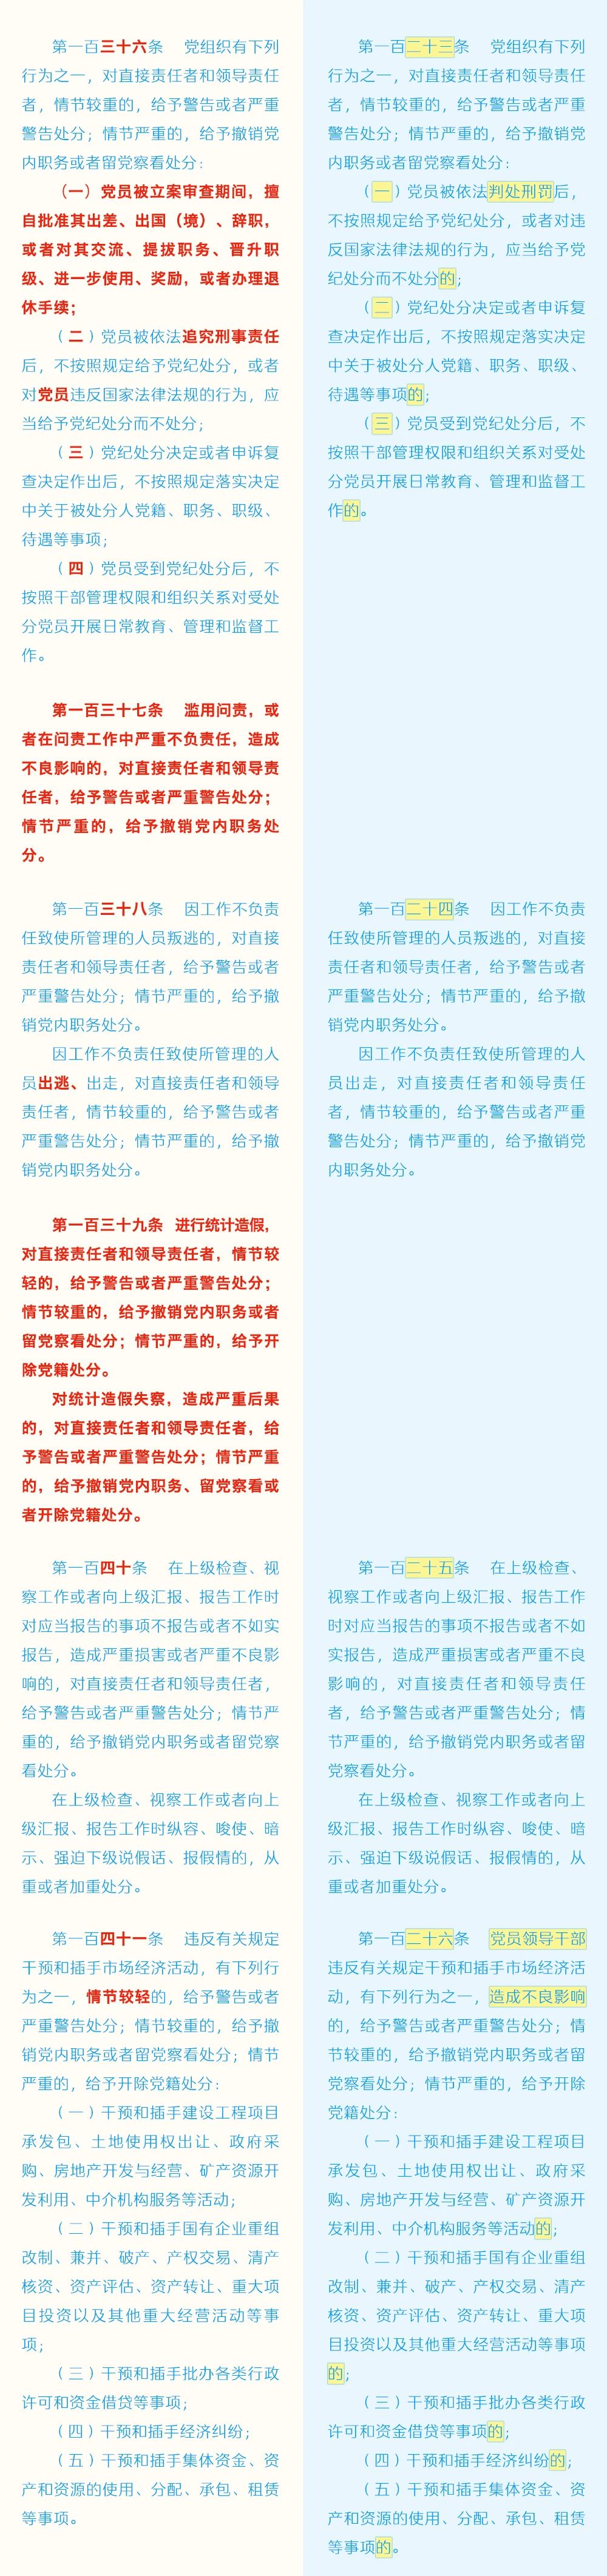 《中国共产党纪律处分条例》修订条文对照表20.jpg